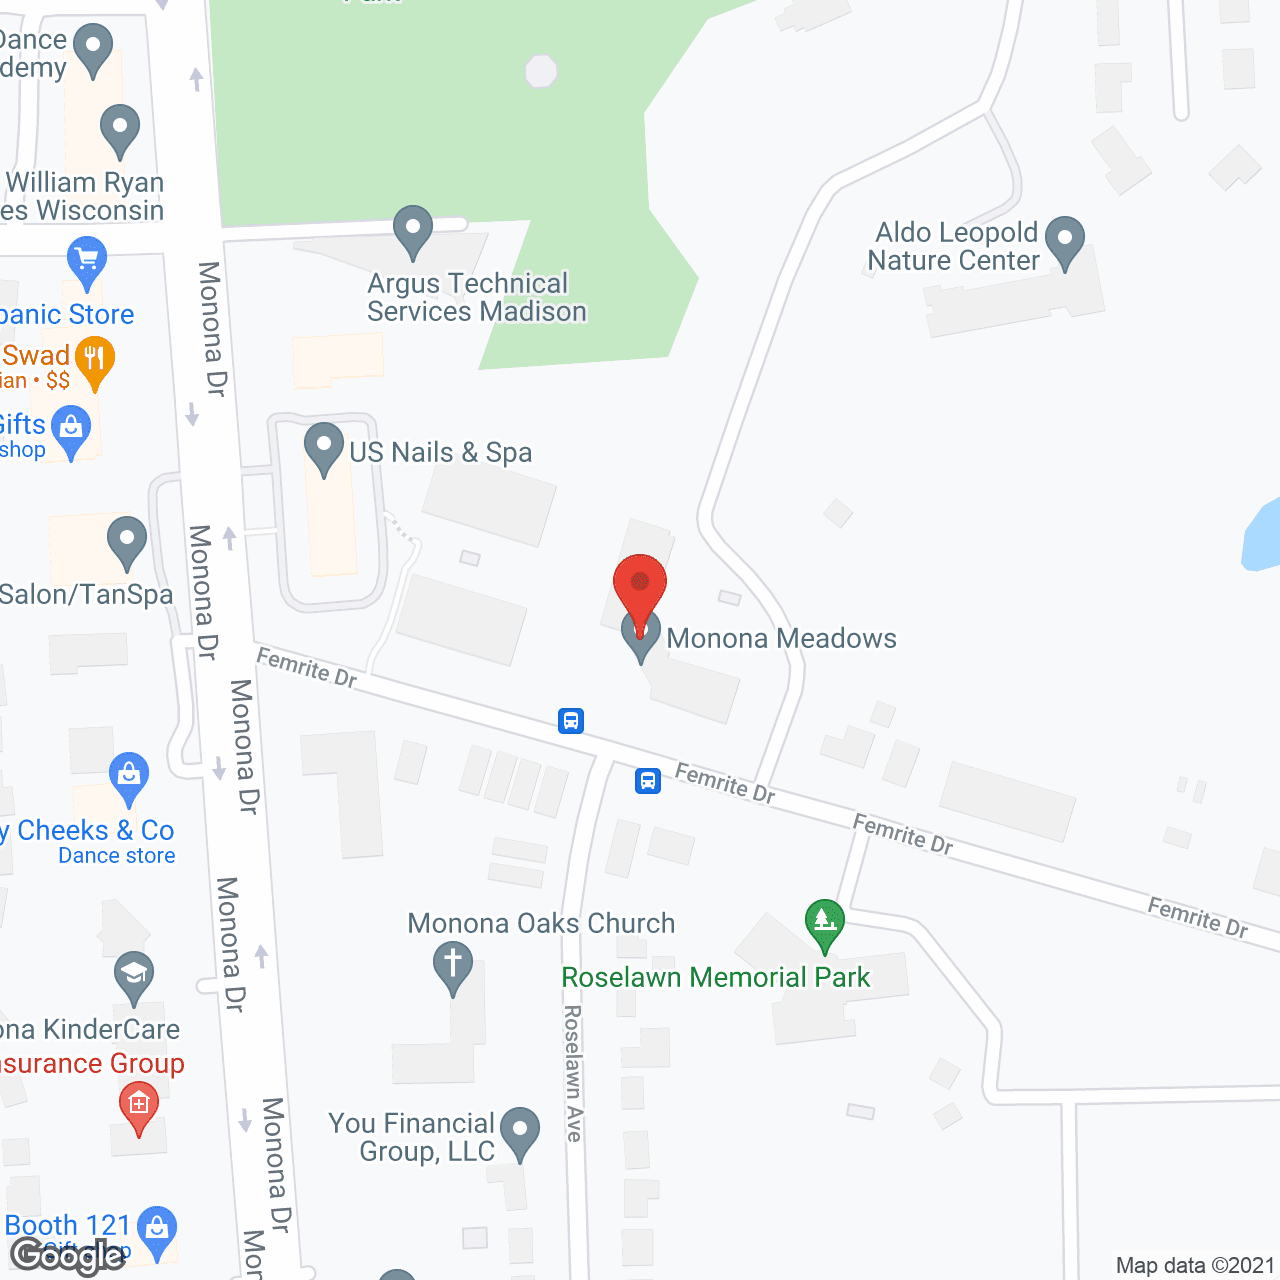 Monona Meadows in google map